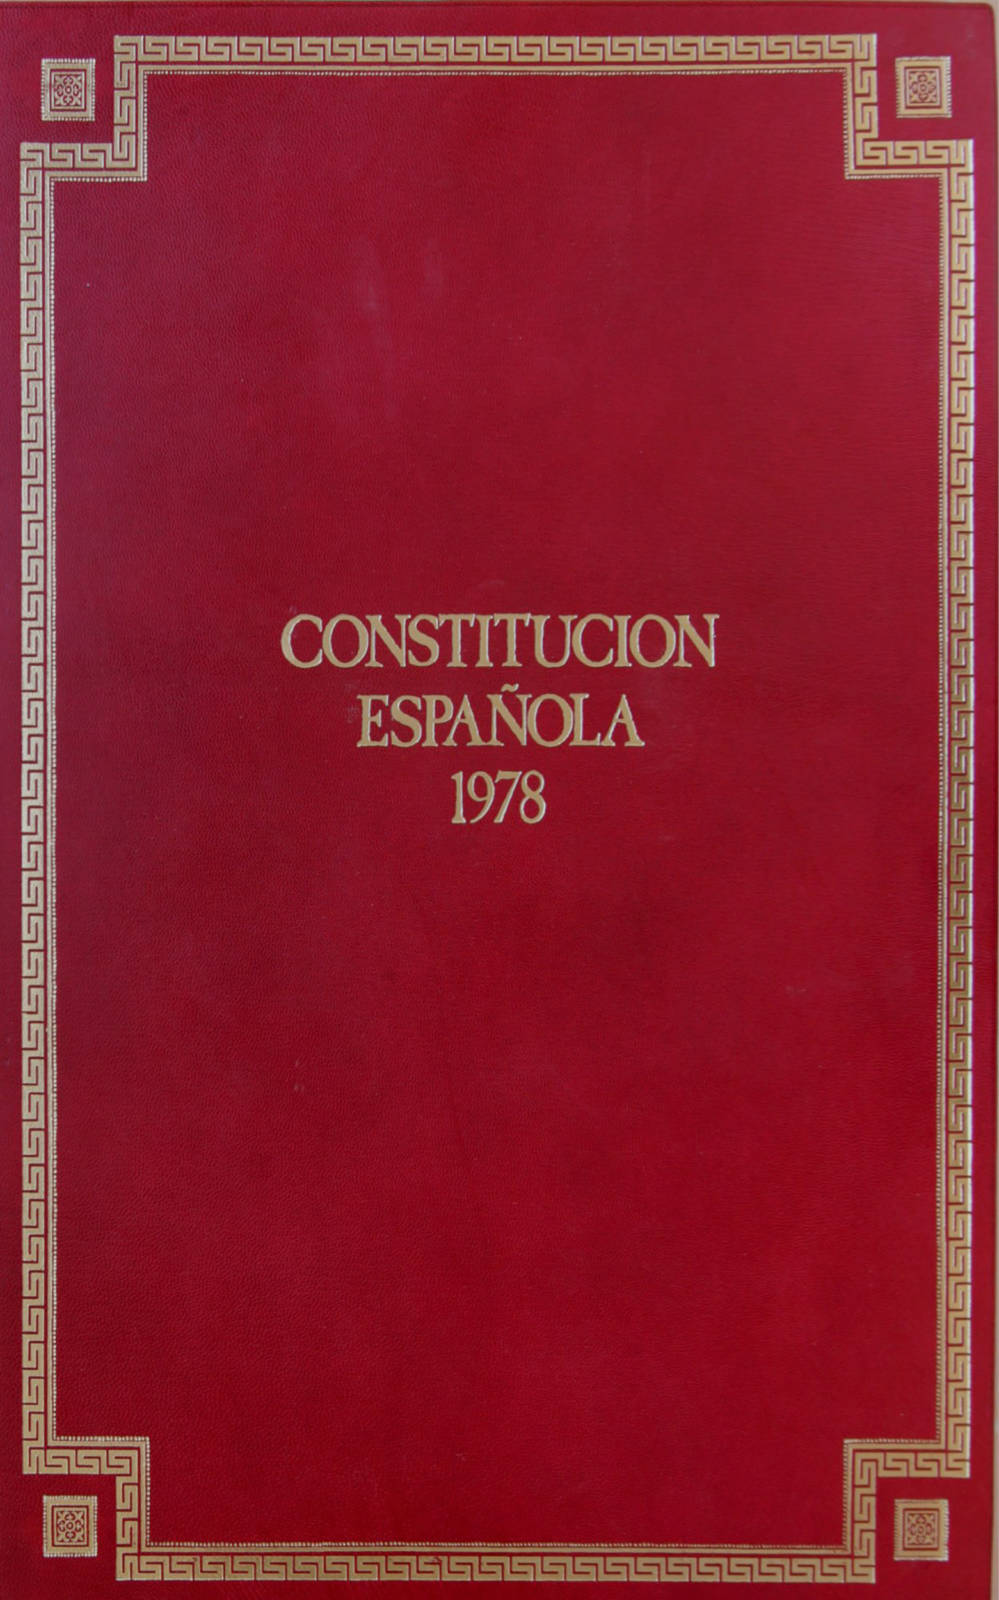 40 años de la constitución española